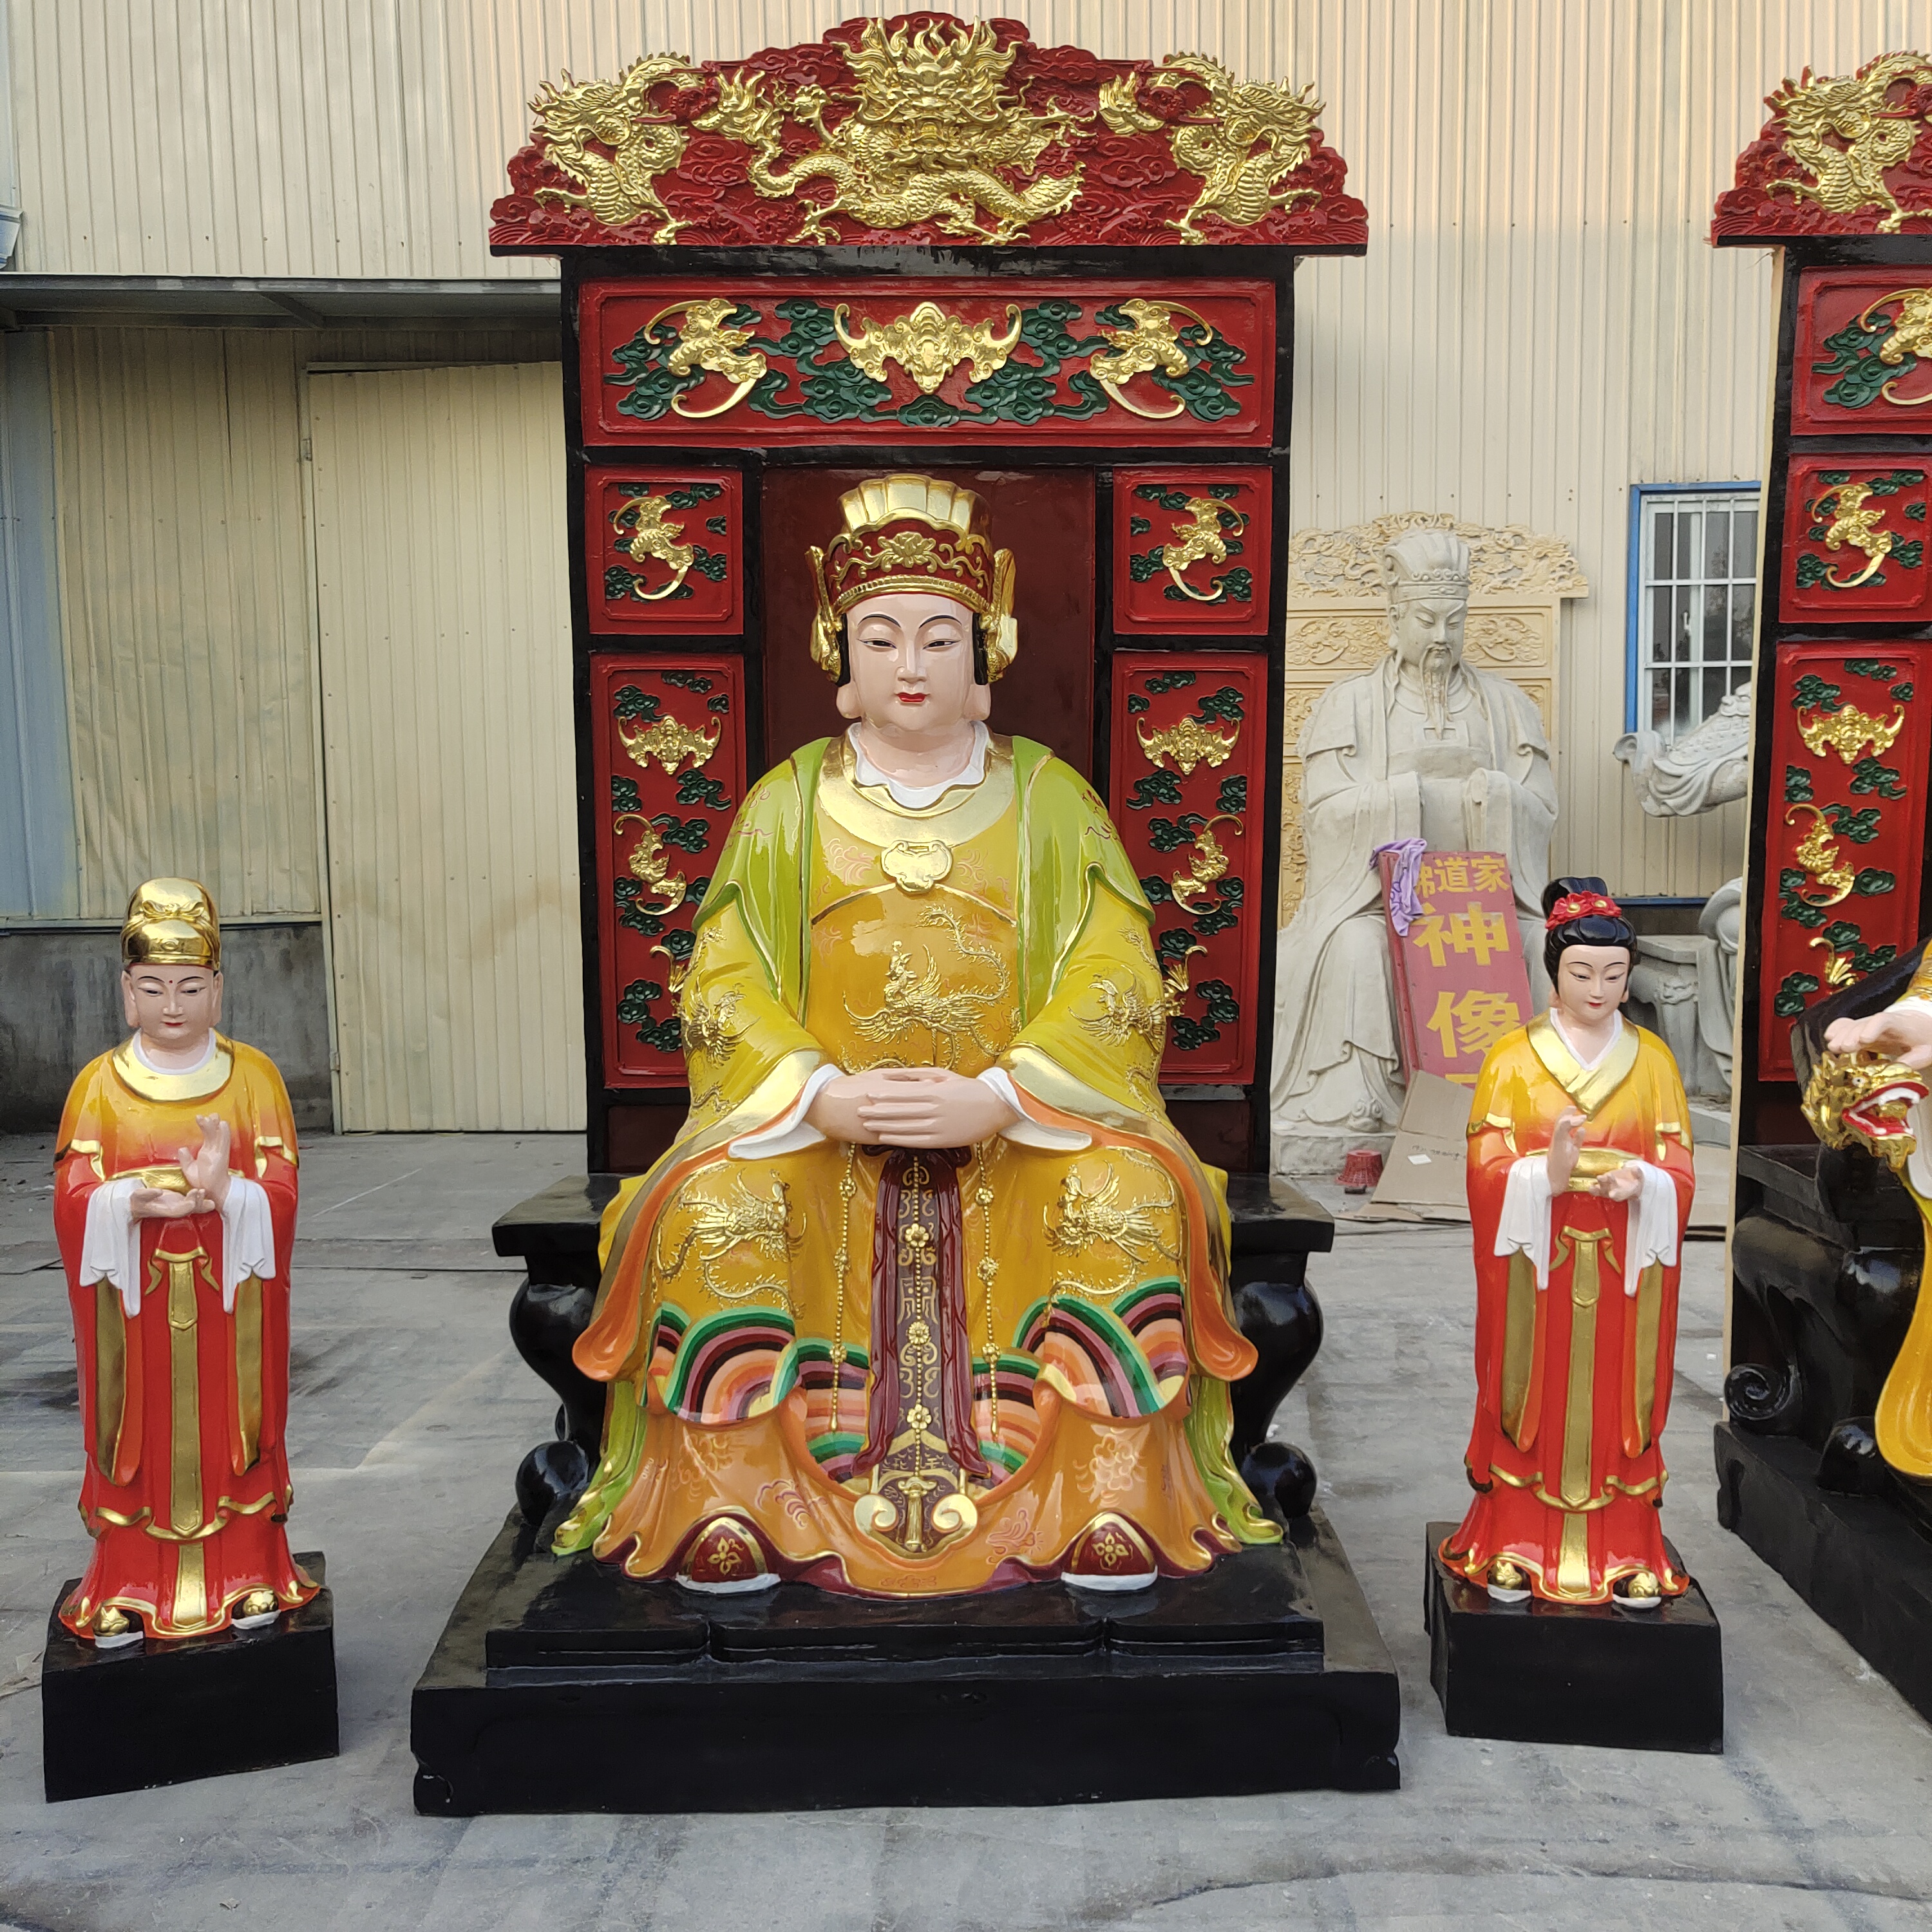 供应玉皇大帝坐九龙椅像神像 玉帝带背光2.8米 手工彩绘玻璃钢材质佛像摆件